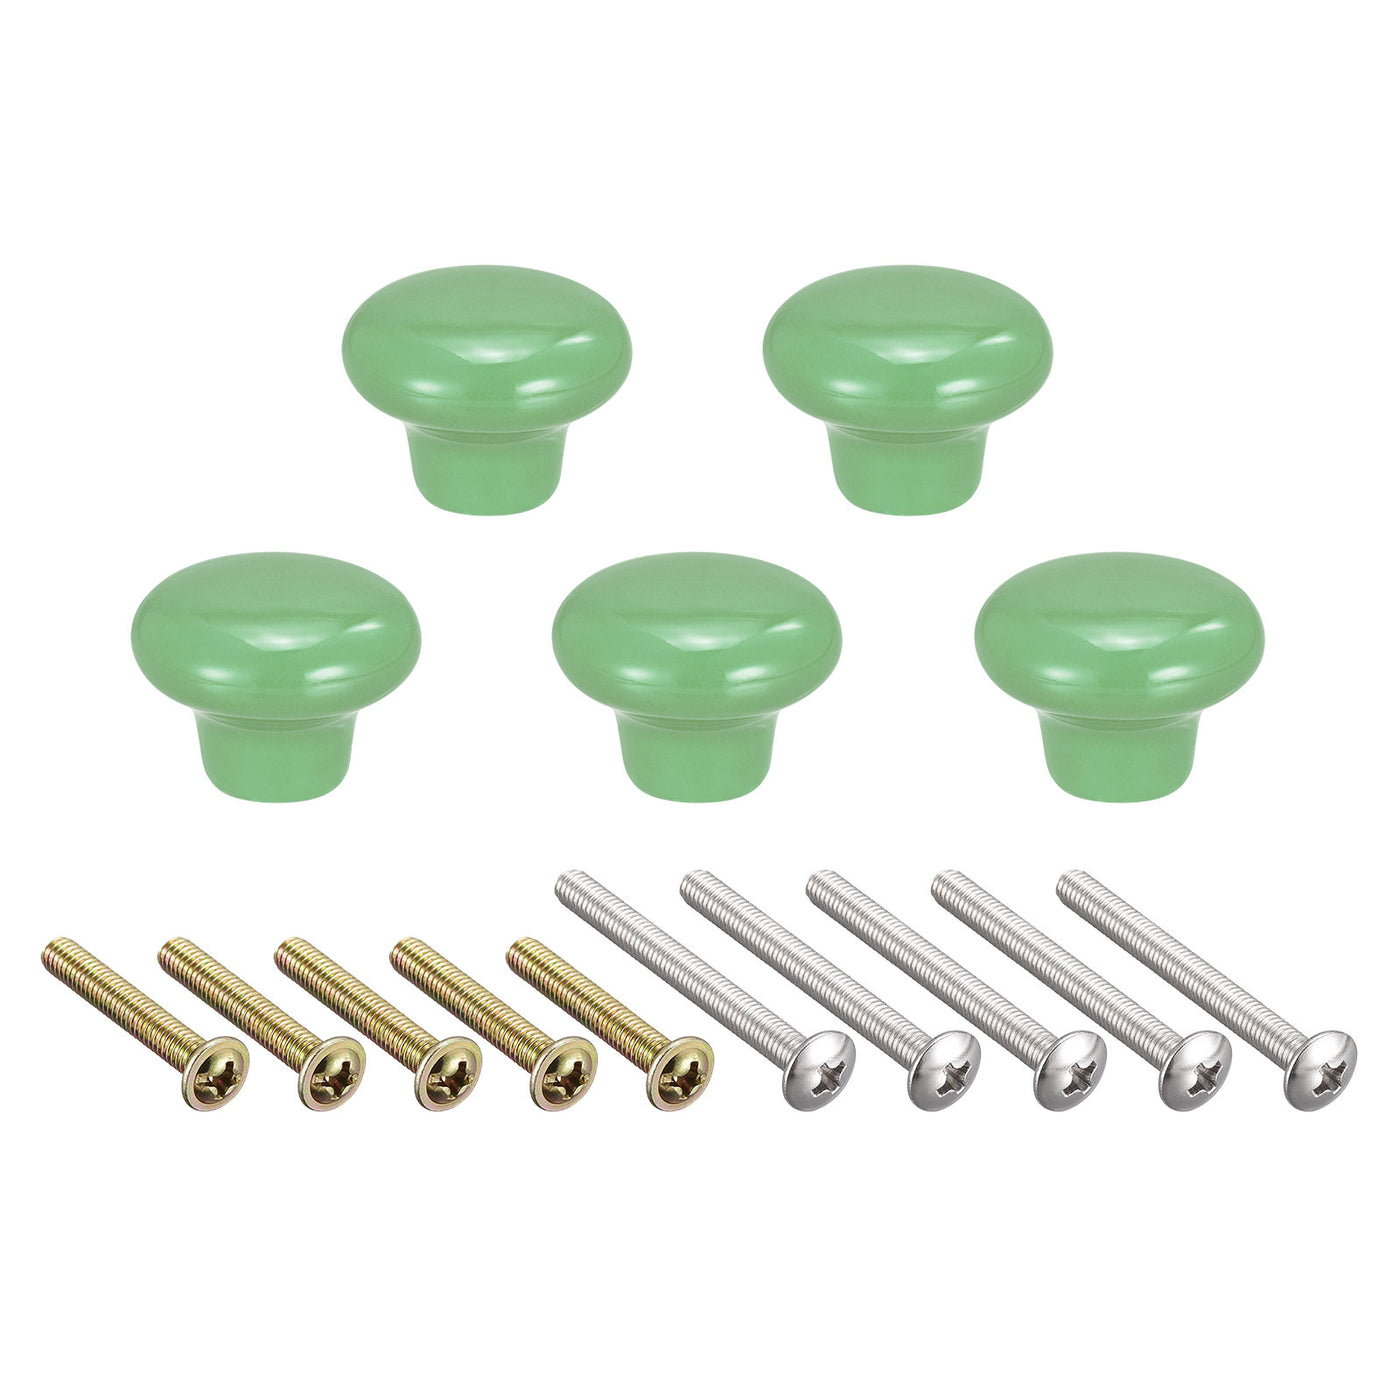 uxcell Uxcell 32x24mm Ceramic Drawer Knobs, 5pcs Mushroom Shape Door Pull Handles Green